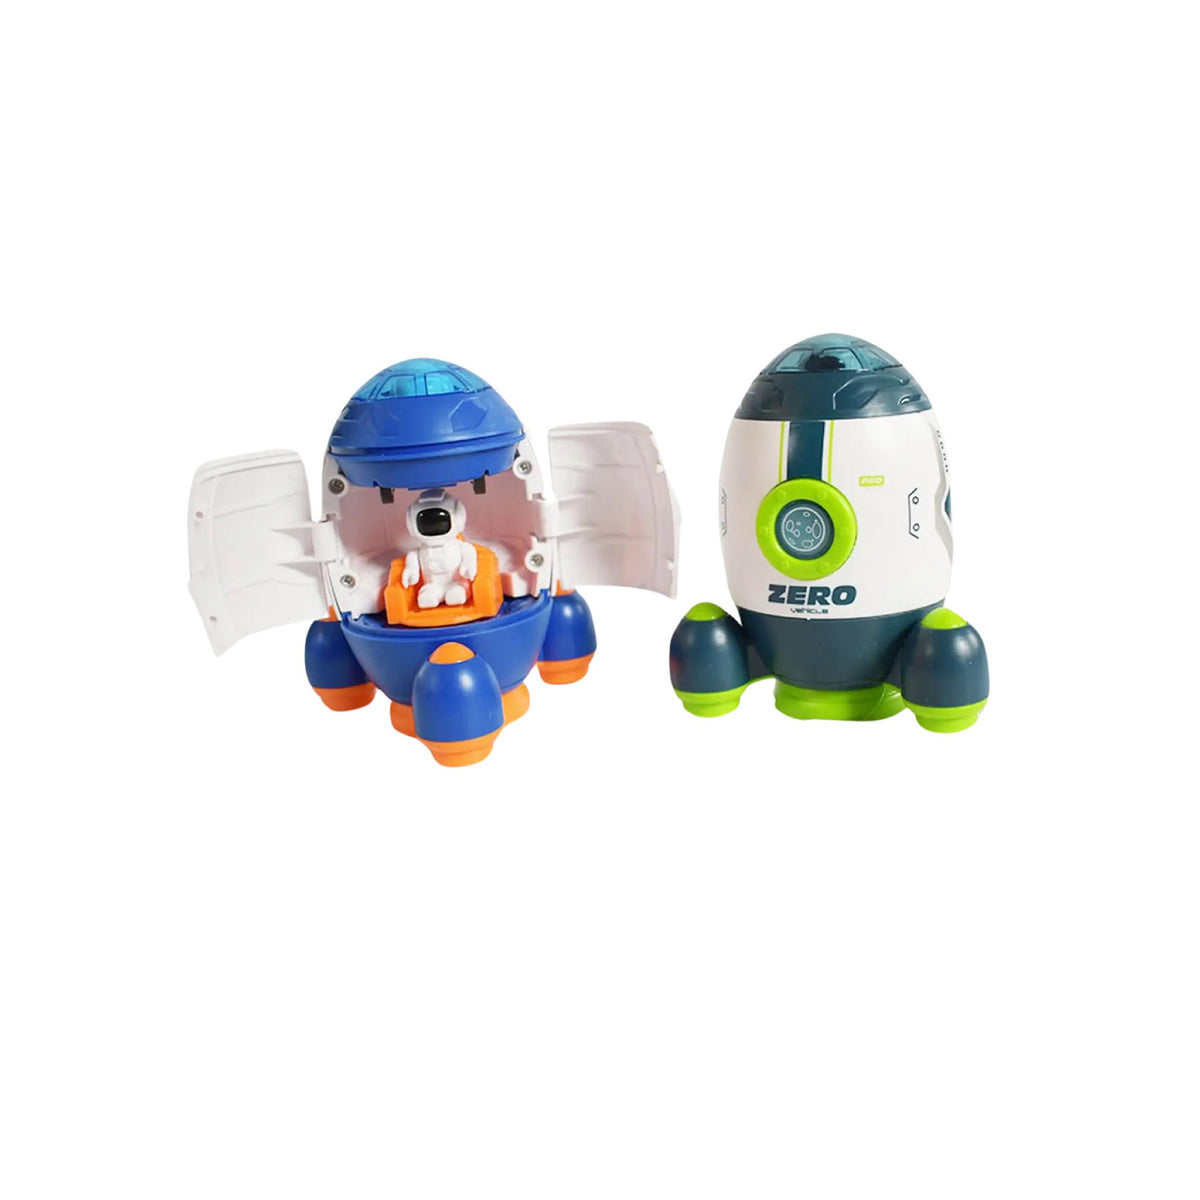 Spaceship Toy